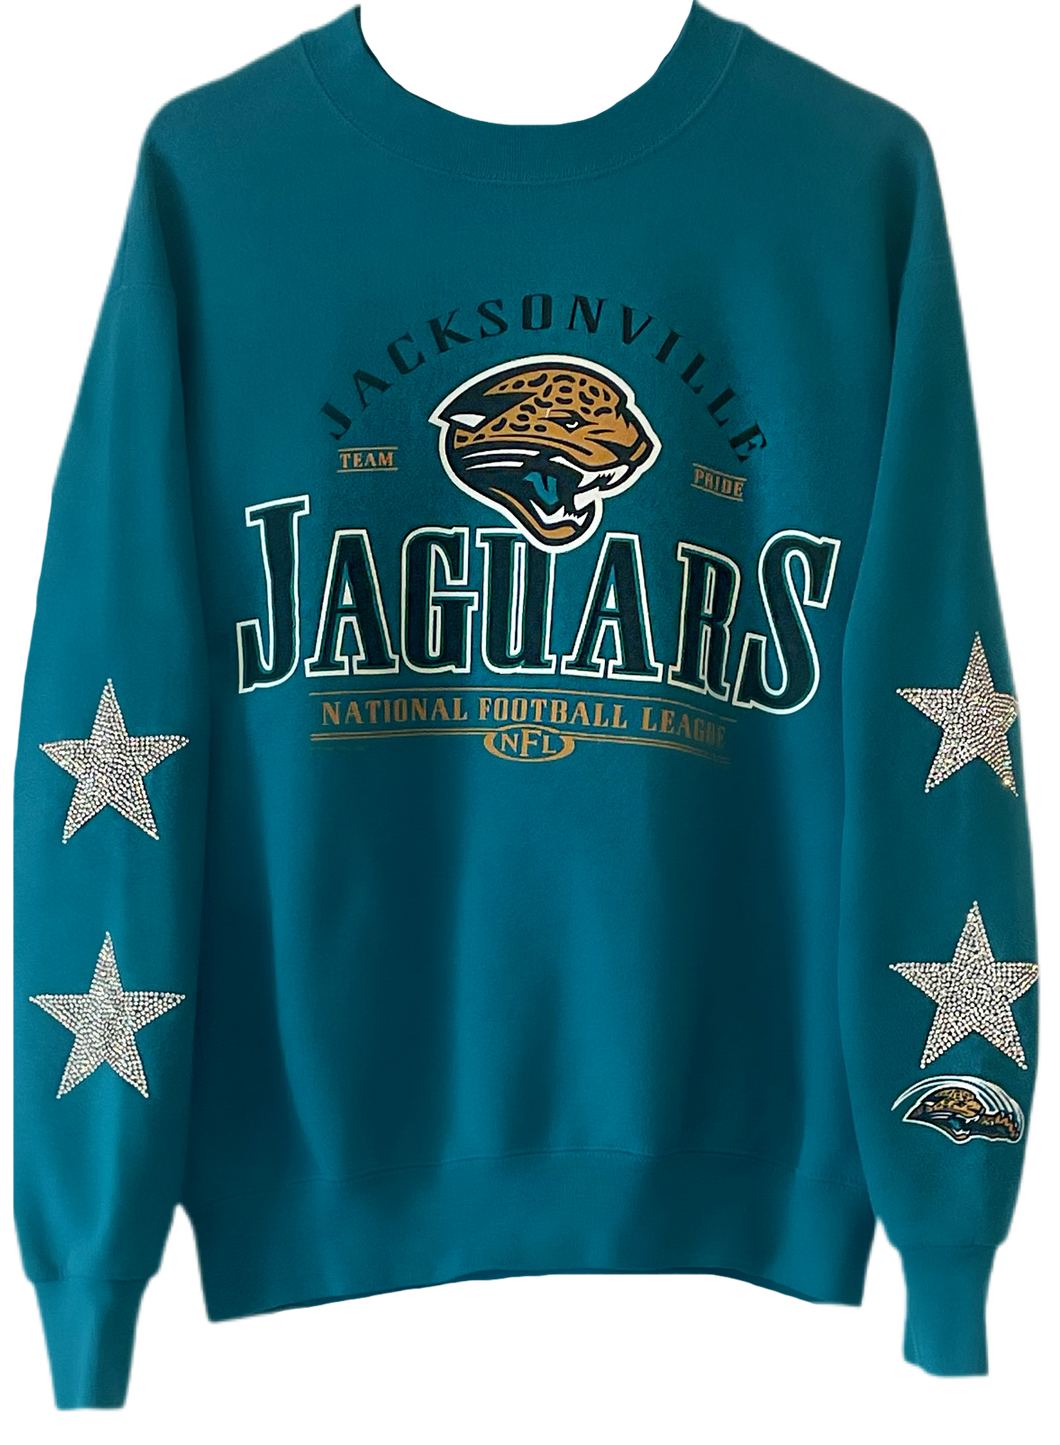 Jacksonville Jaguars, NFL One of a KIND Vintage Sweatshirt with Crystal Star Design